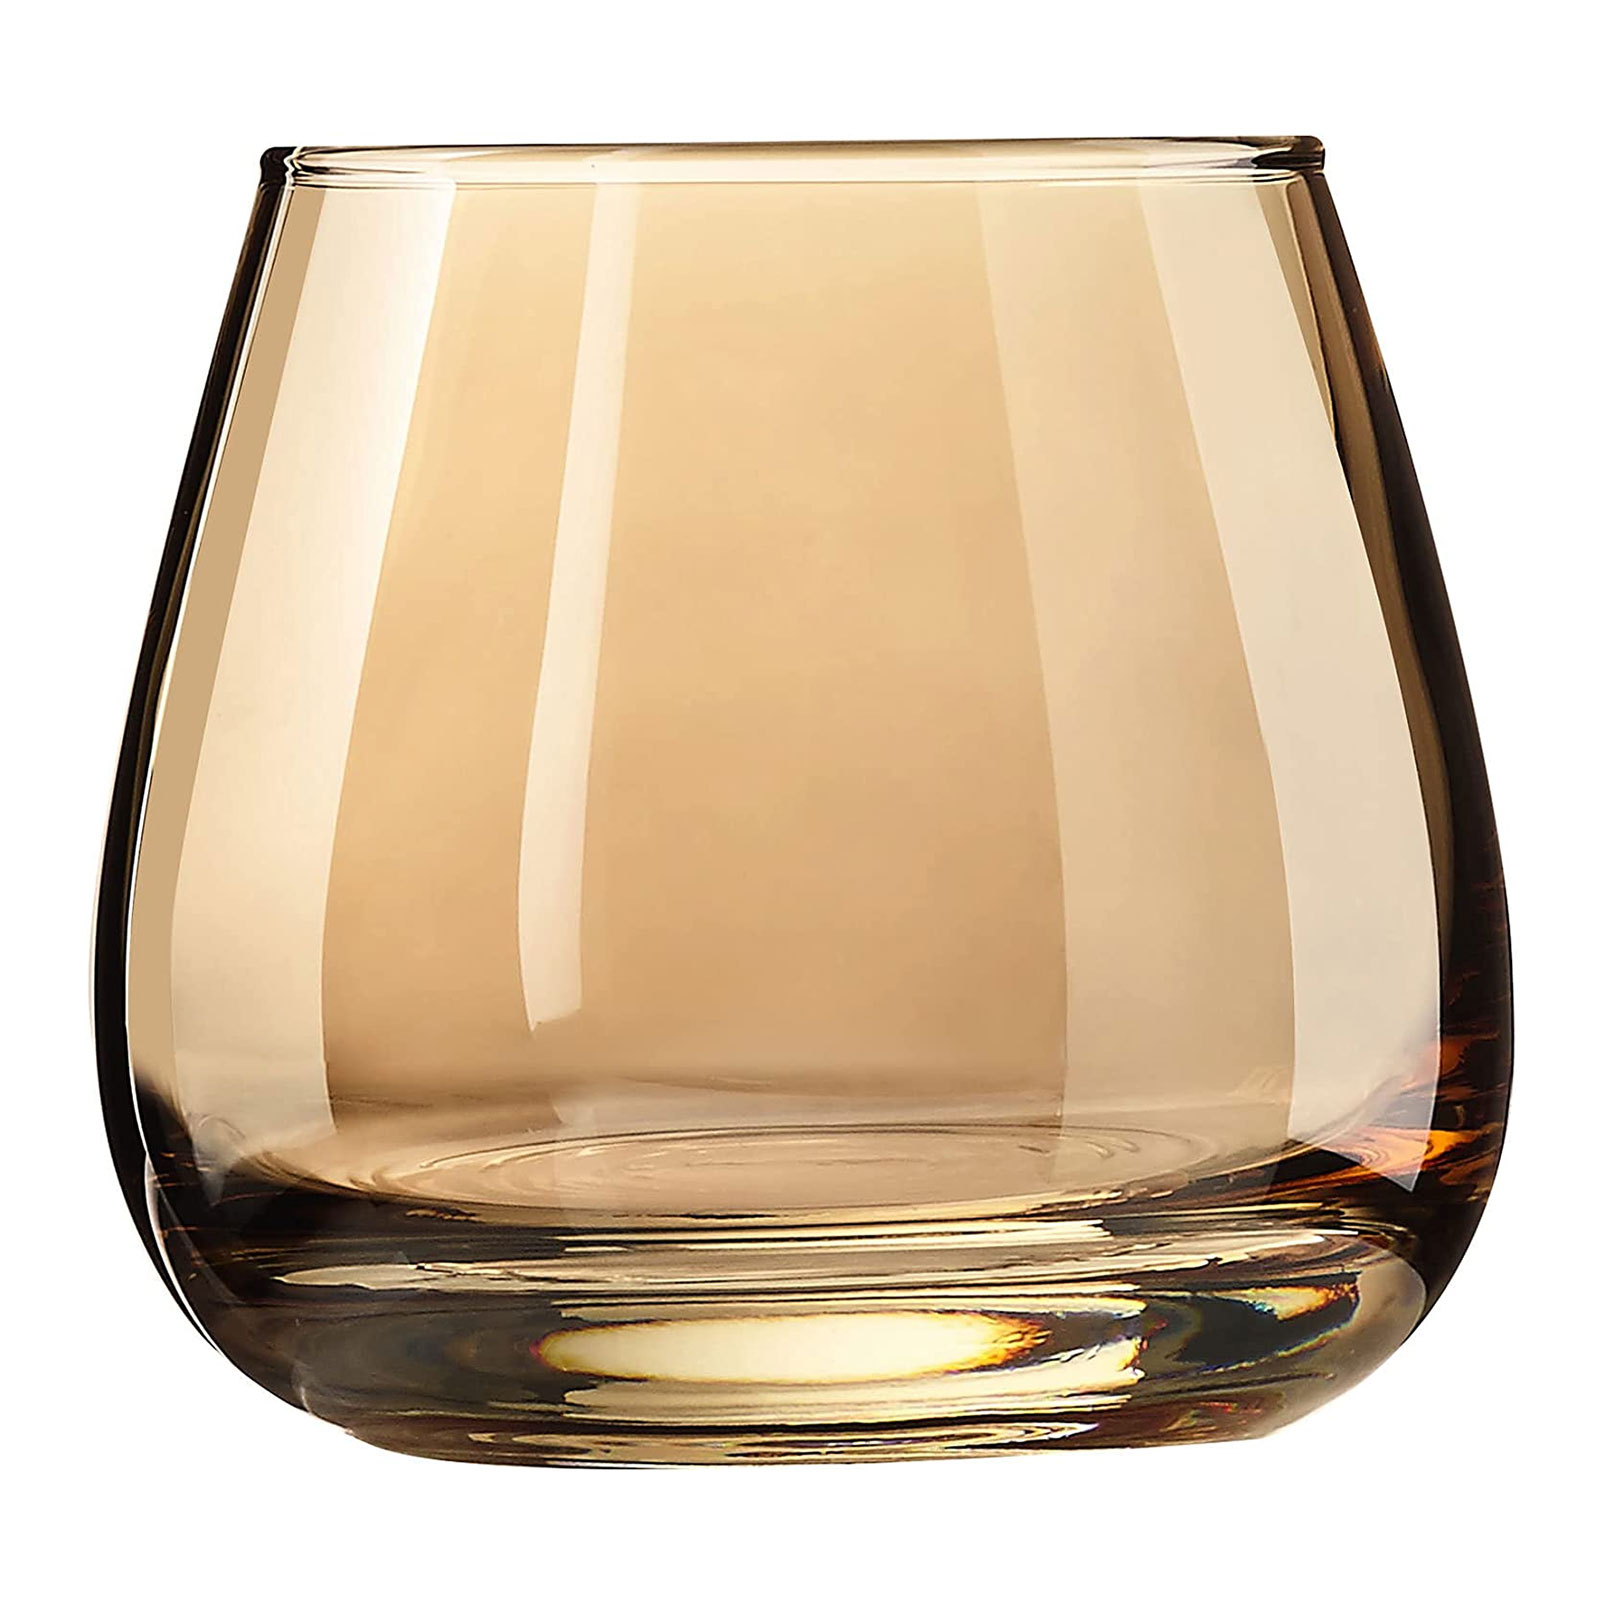 CreaTable, 23523, Serie GLAMOUR Roségold, Whiskyglas 4 teilig